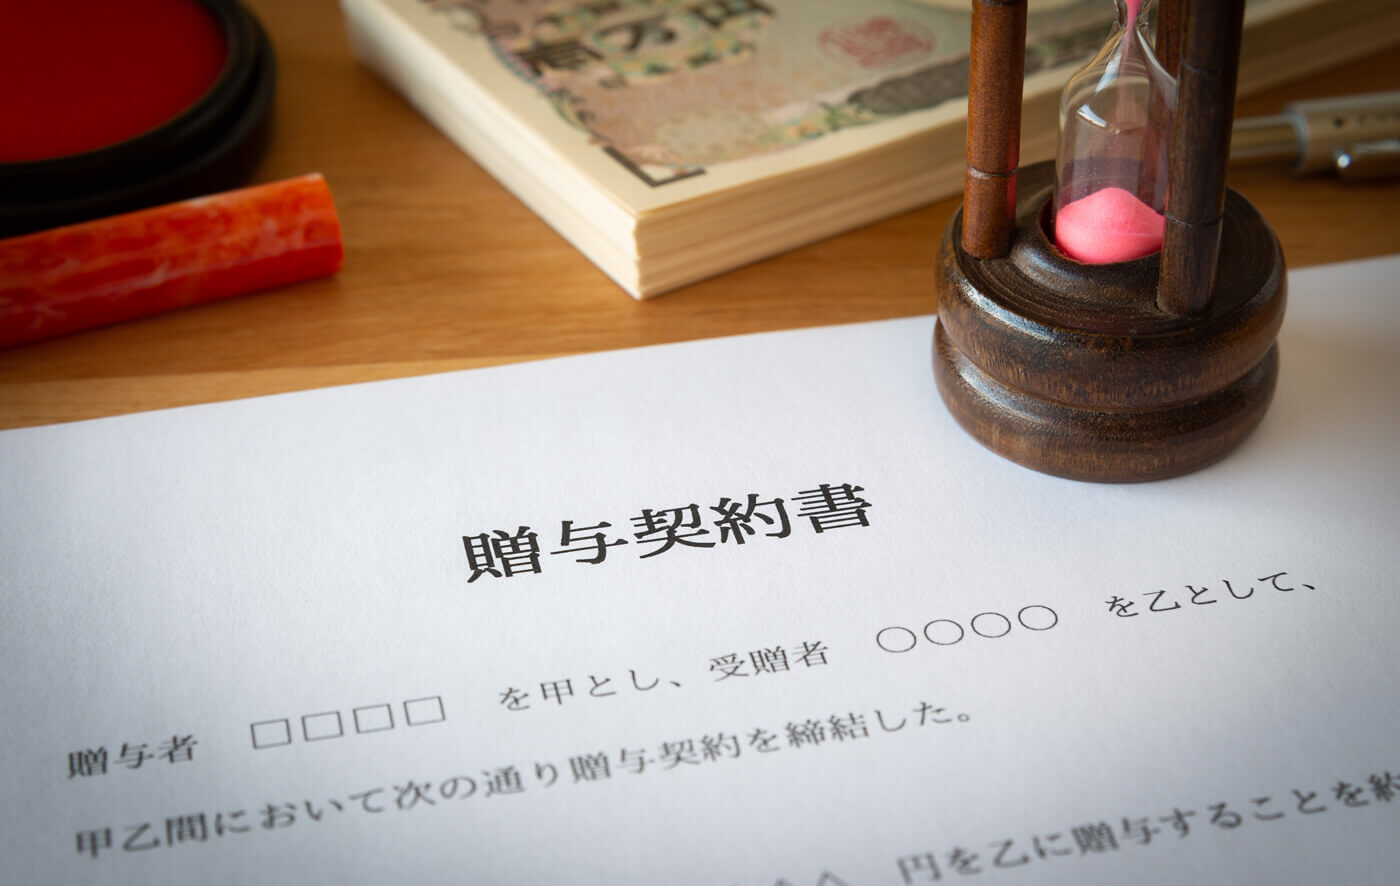 契約書・リーガルチェック作業は大阪市の顧問弁護士